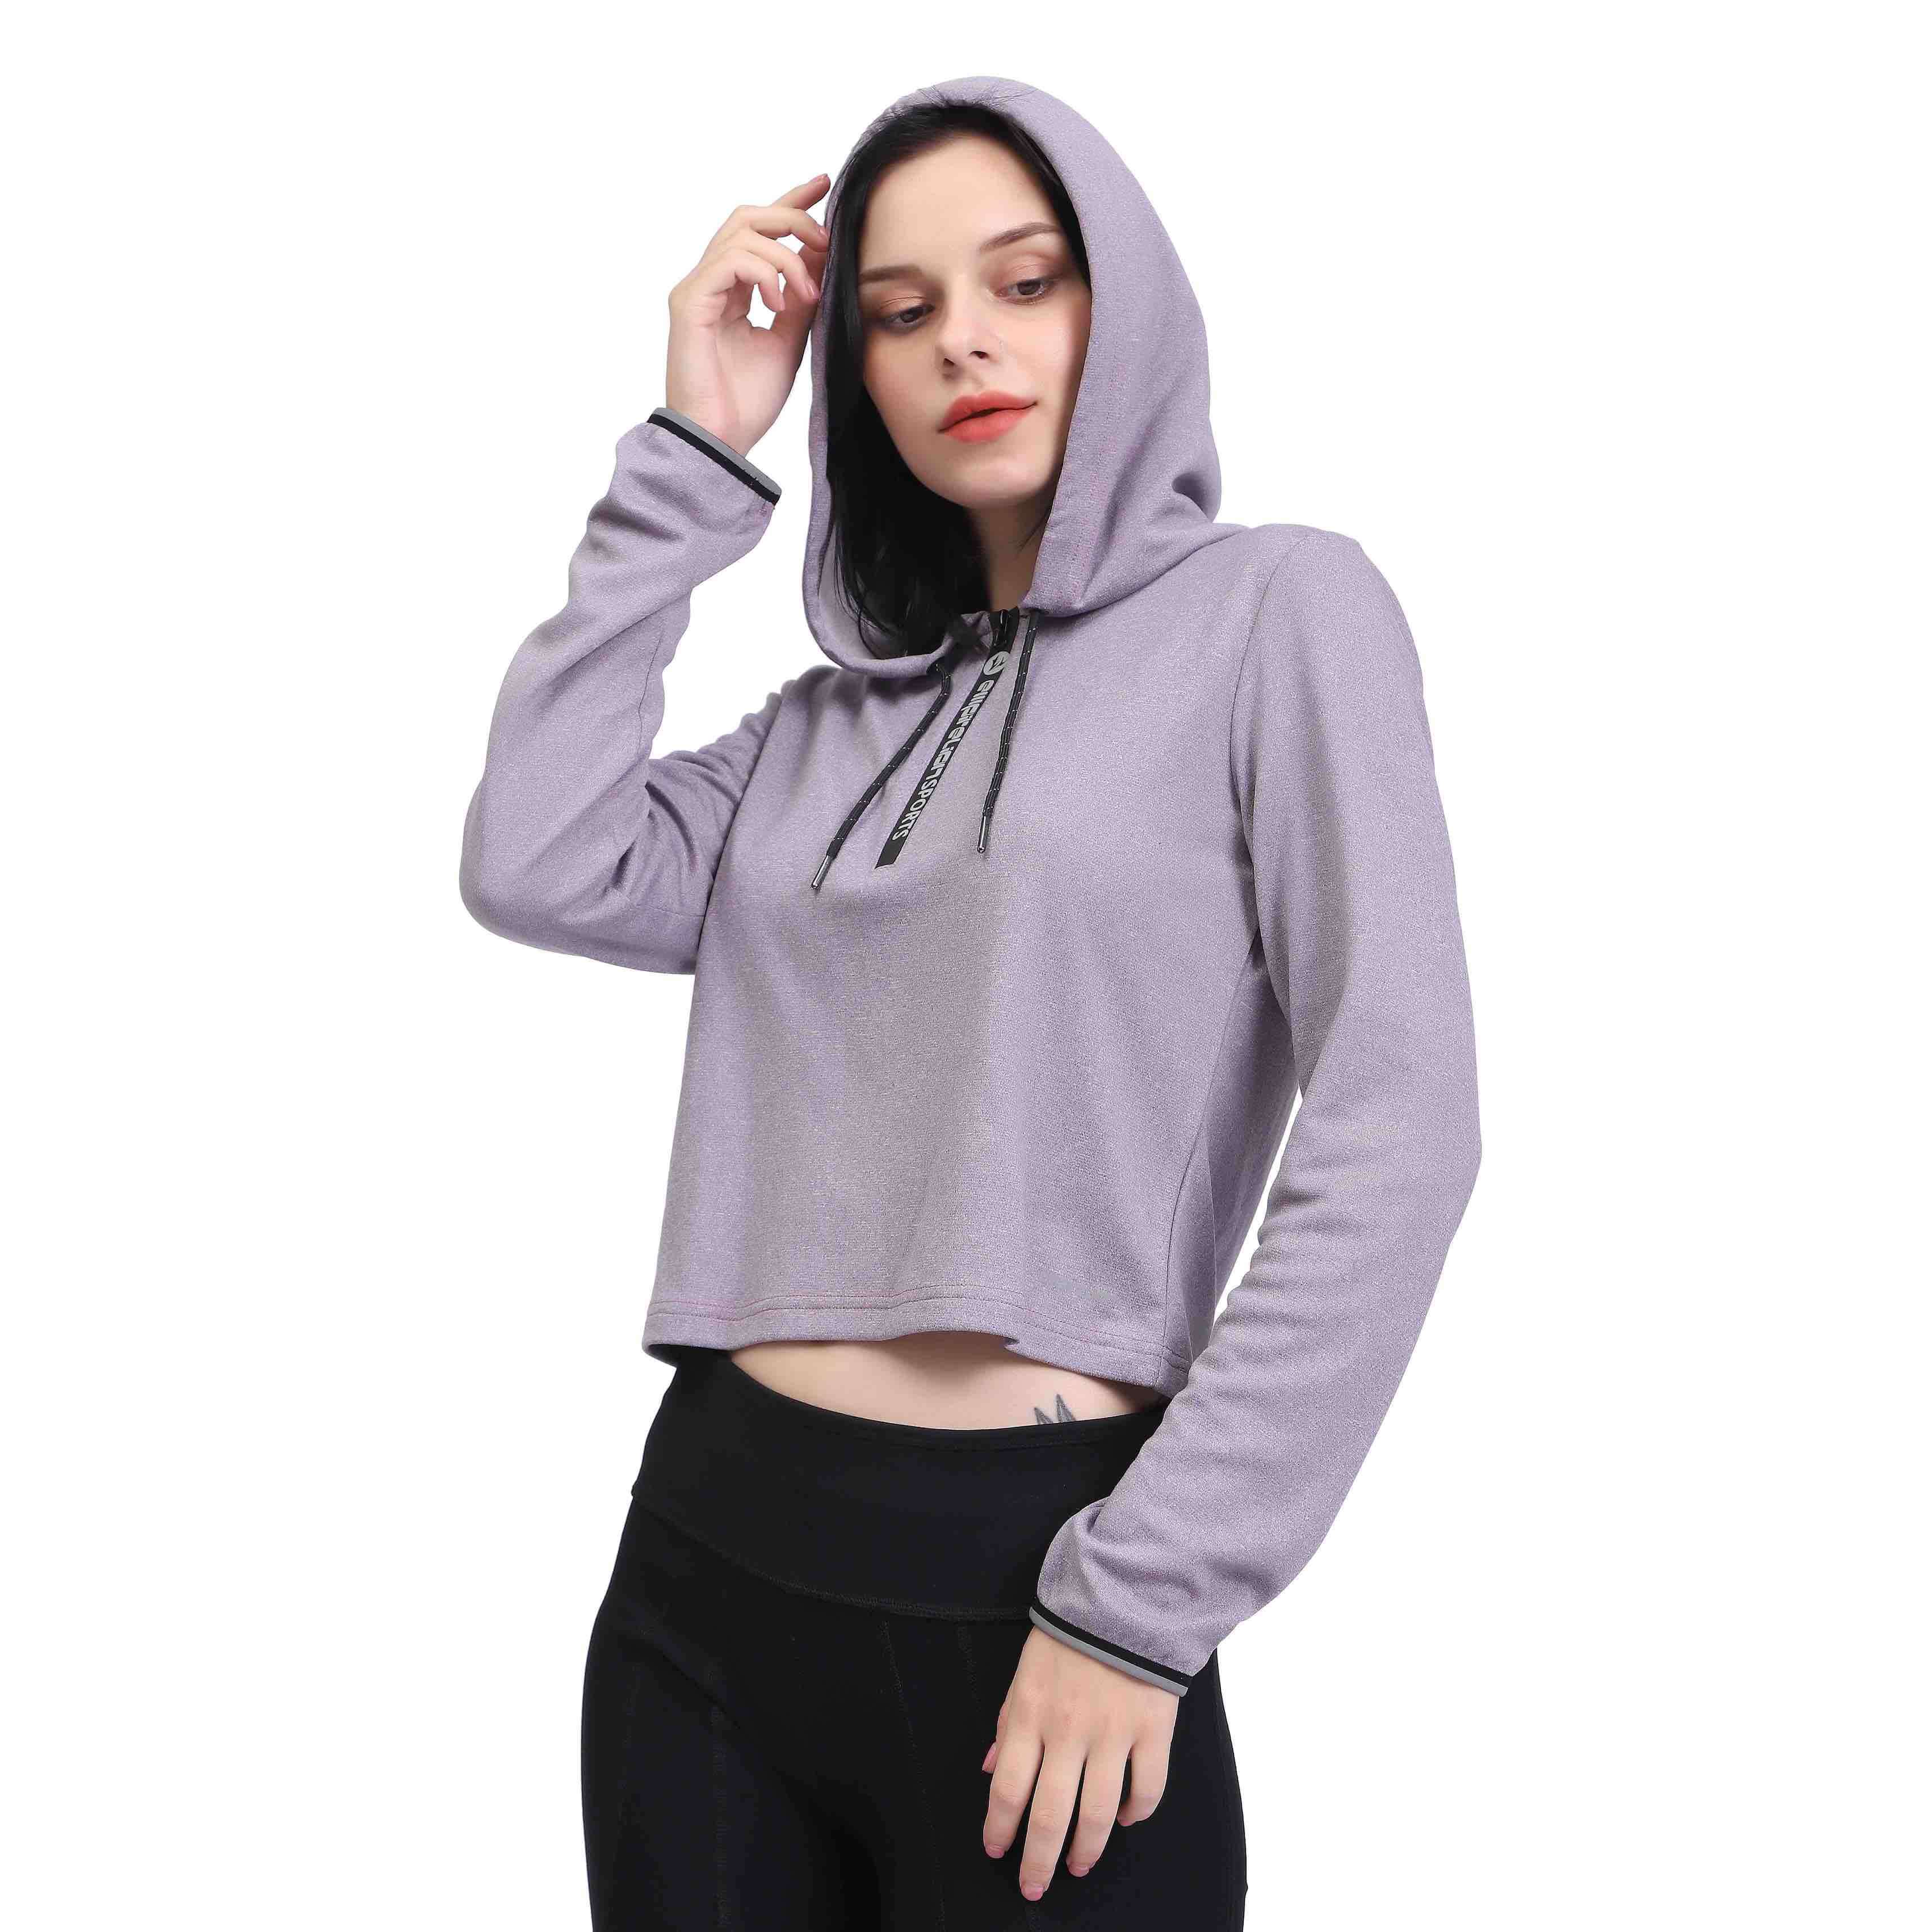 Women's Long Sleeve Workout Crop Top Sweatshirt Hoodies